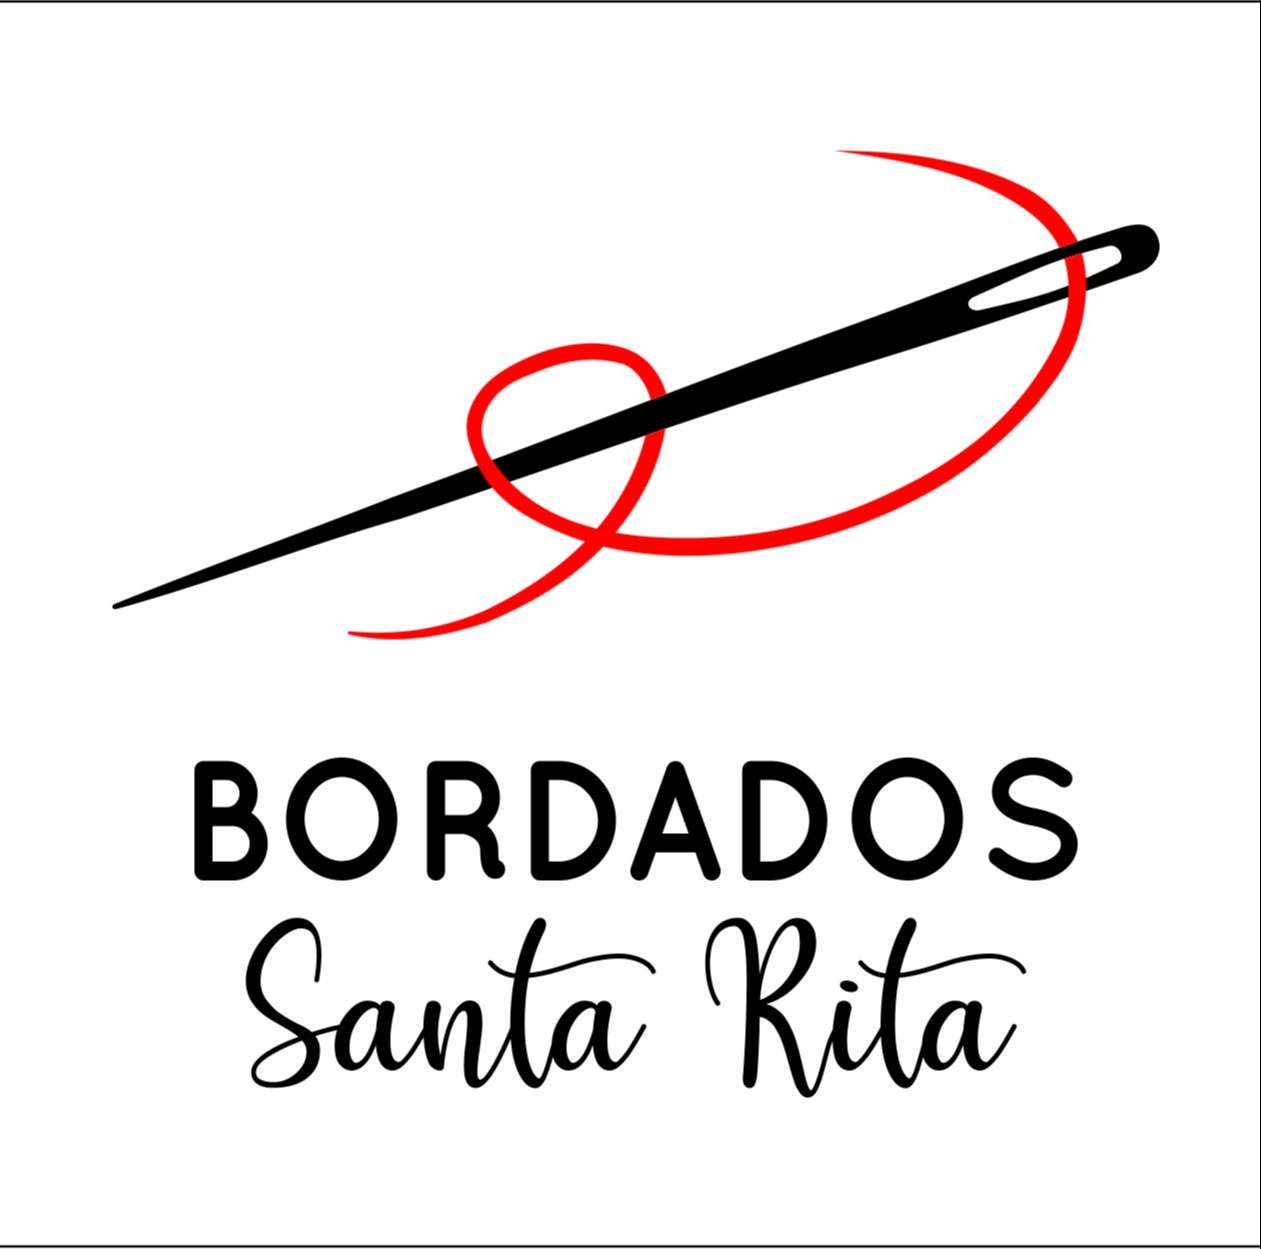 Bordados Santa Rita